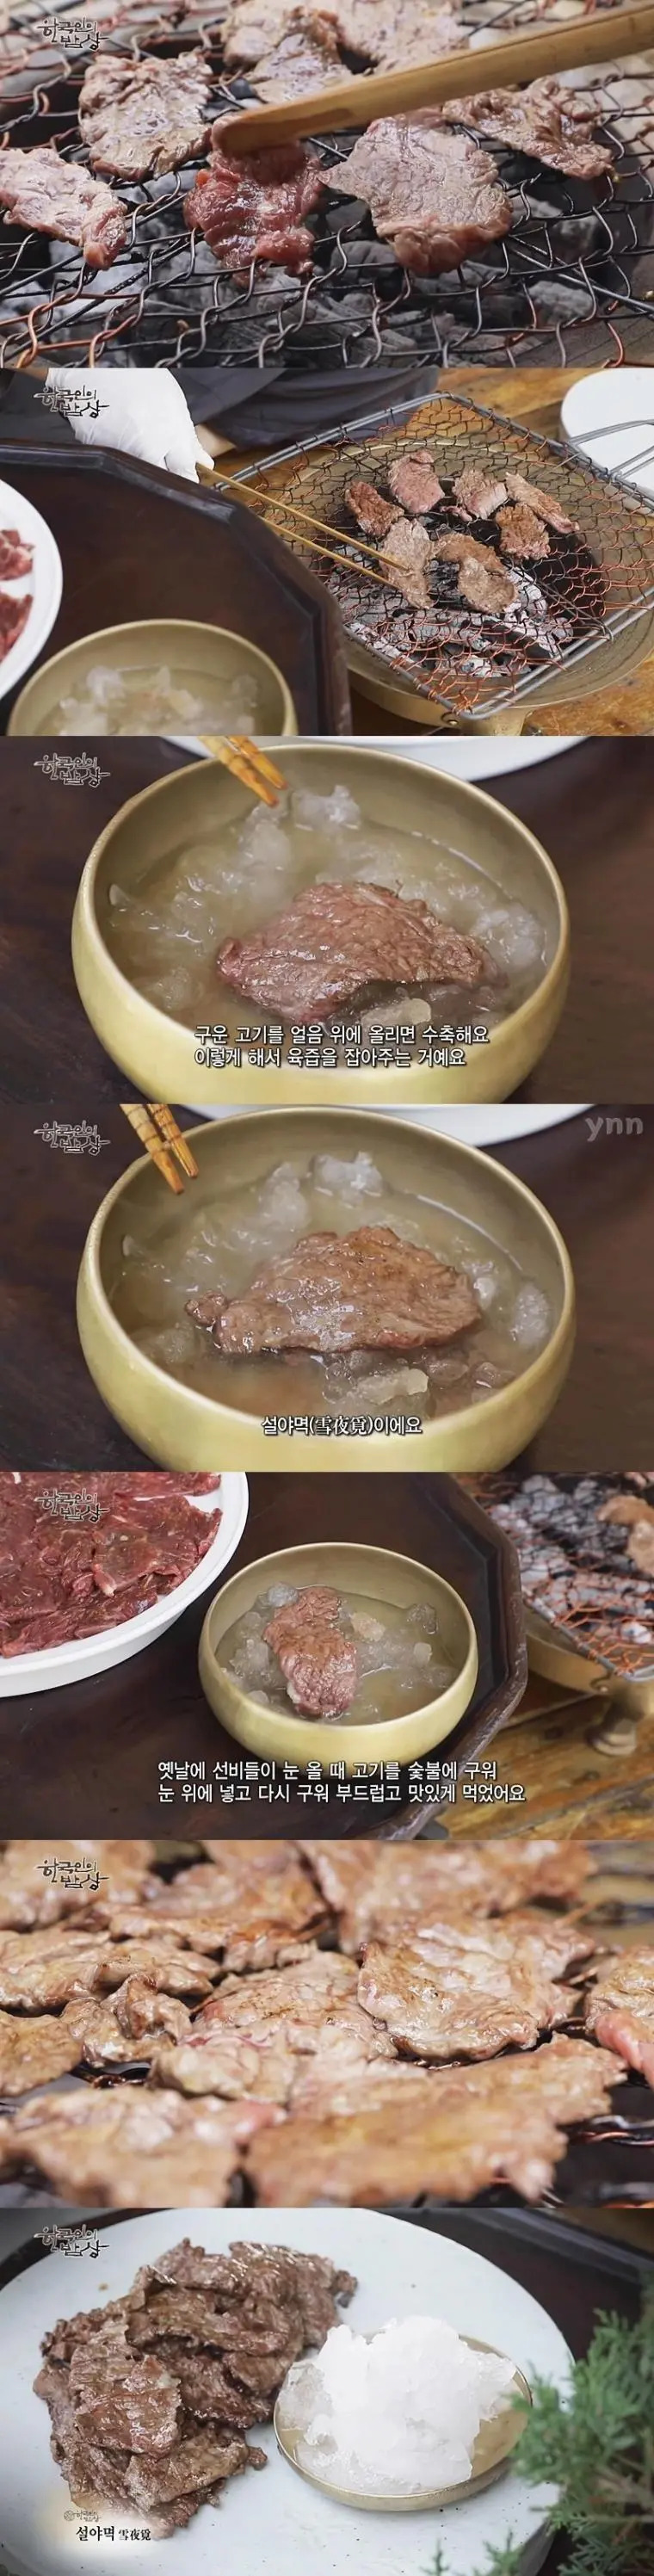 조선시대 선비들이 고기 구워먹던 방식